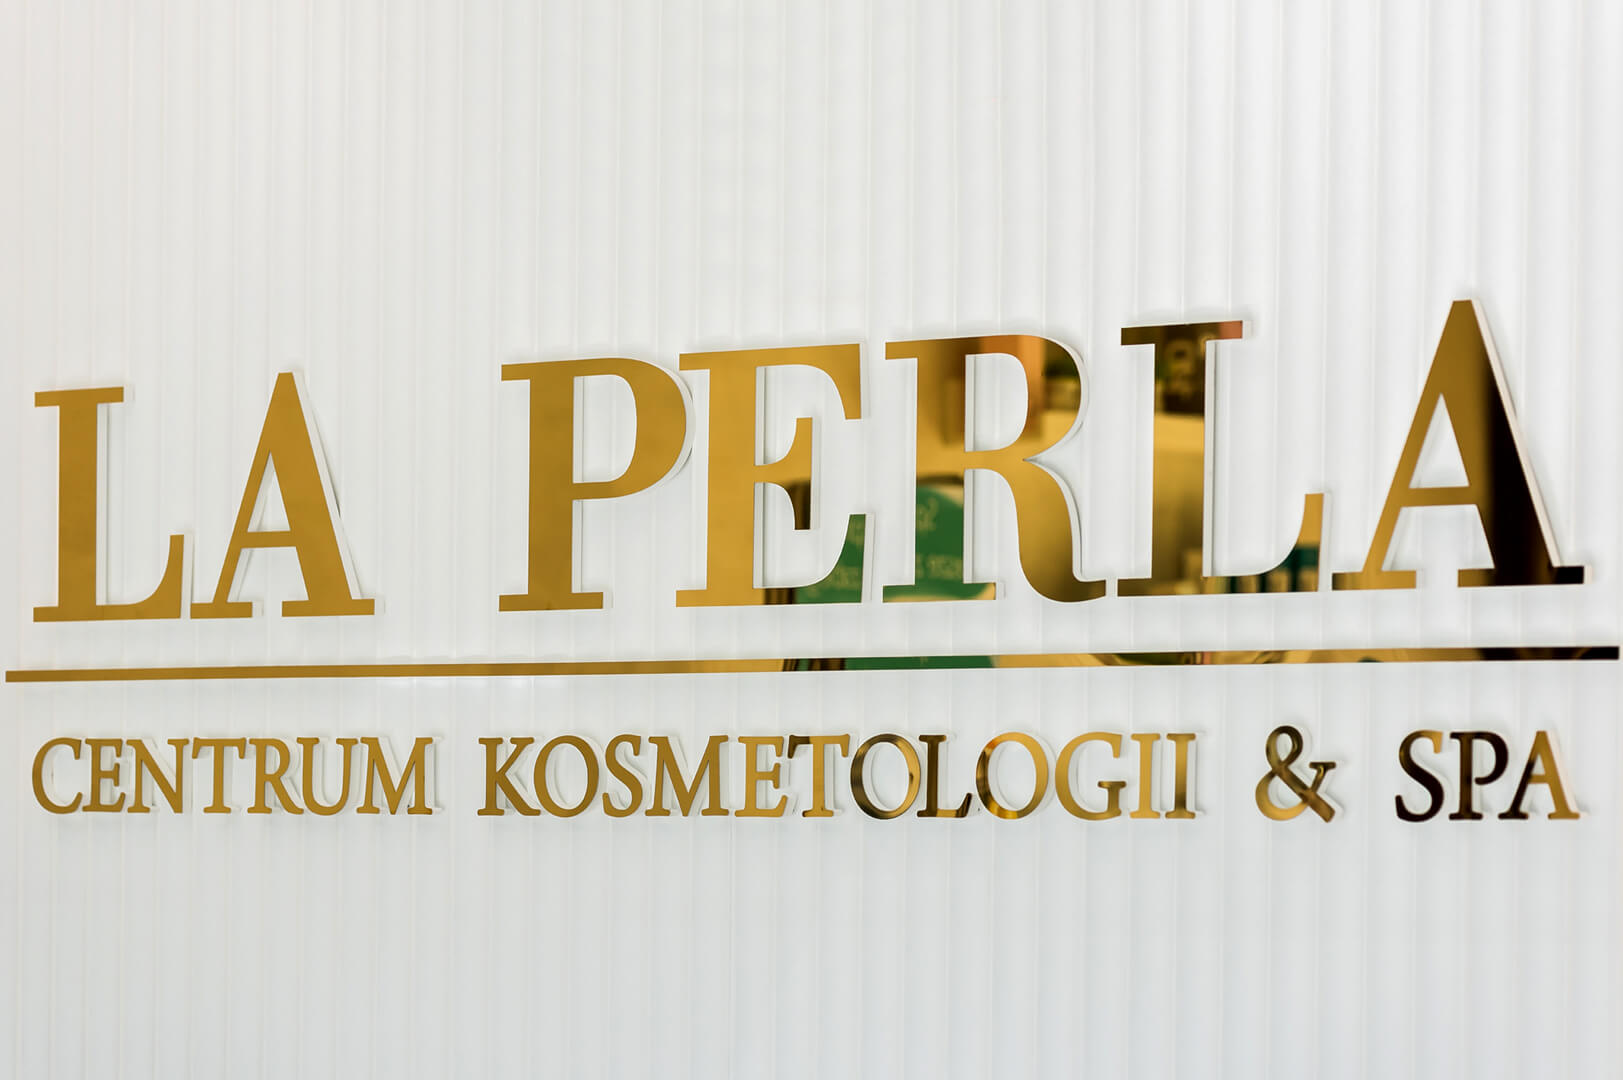 LA PERLA - Lettres 3D en or pour un centre de cosmétologie et de spa